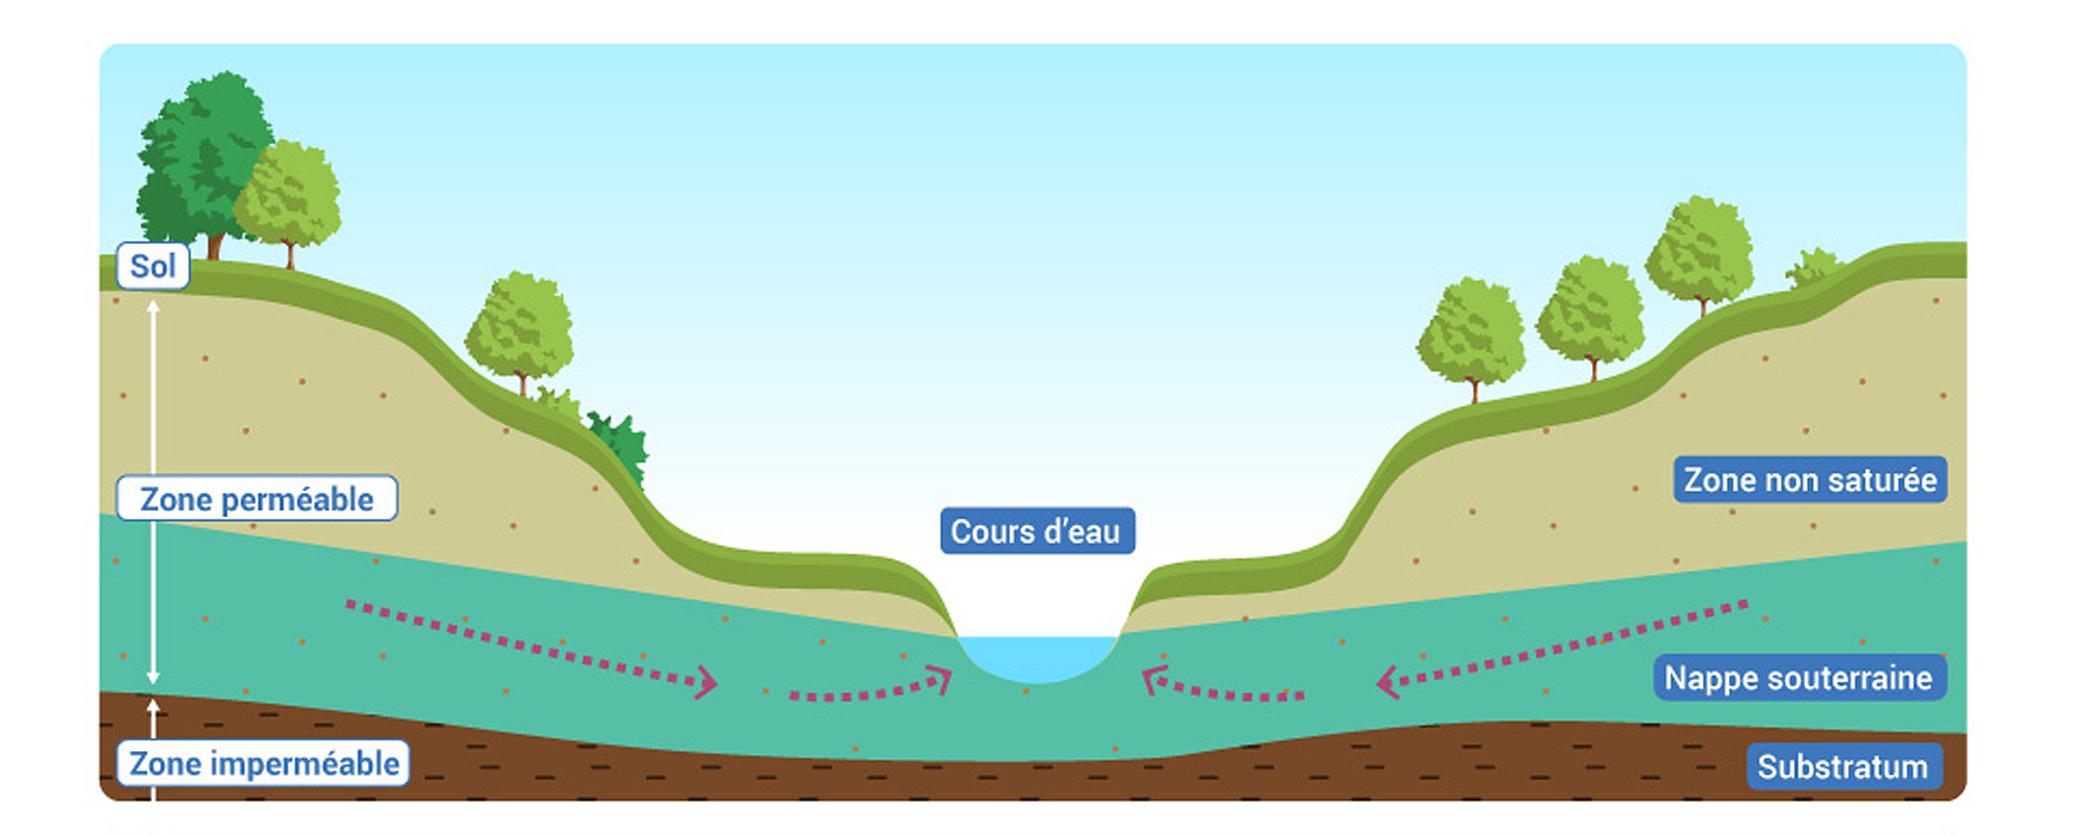 Des échanges entre les nappes souterraines et les cours d'eau